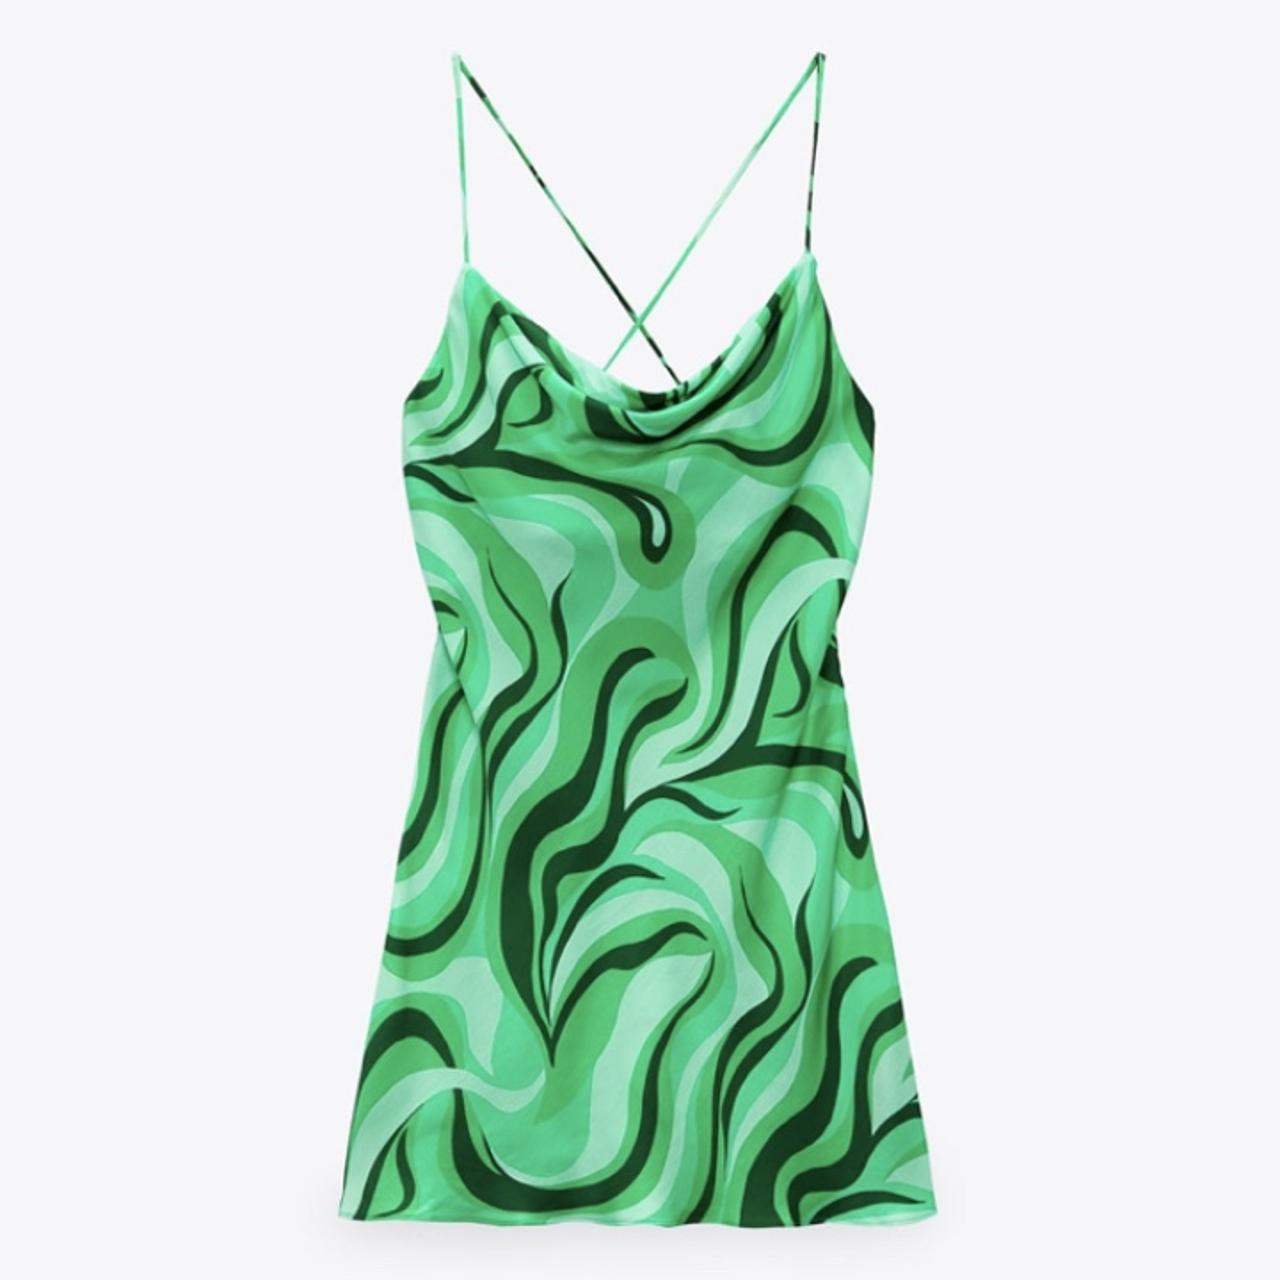 Zara Green Swirl Dress •Sold out online ...